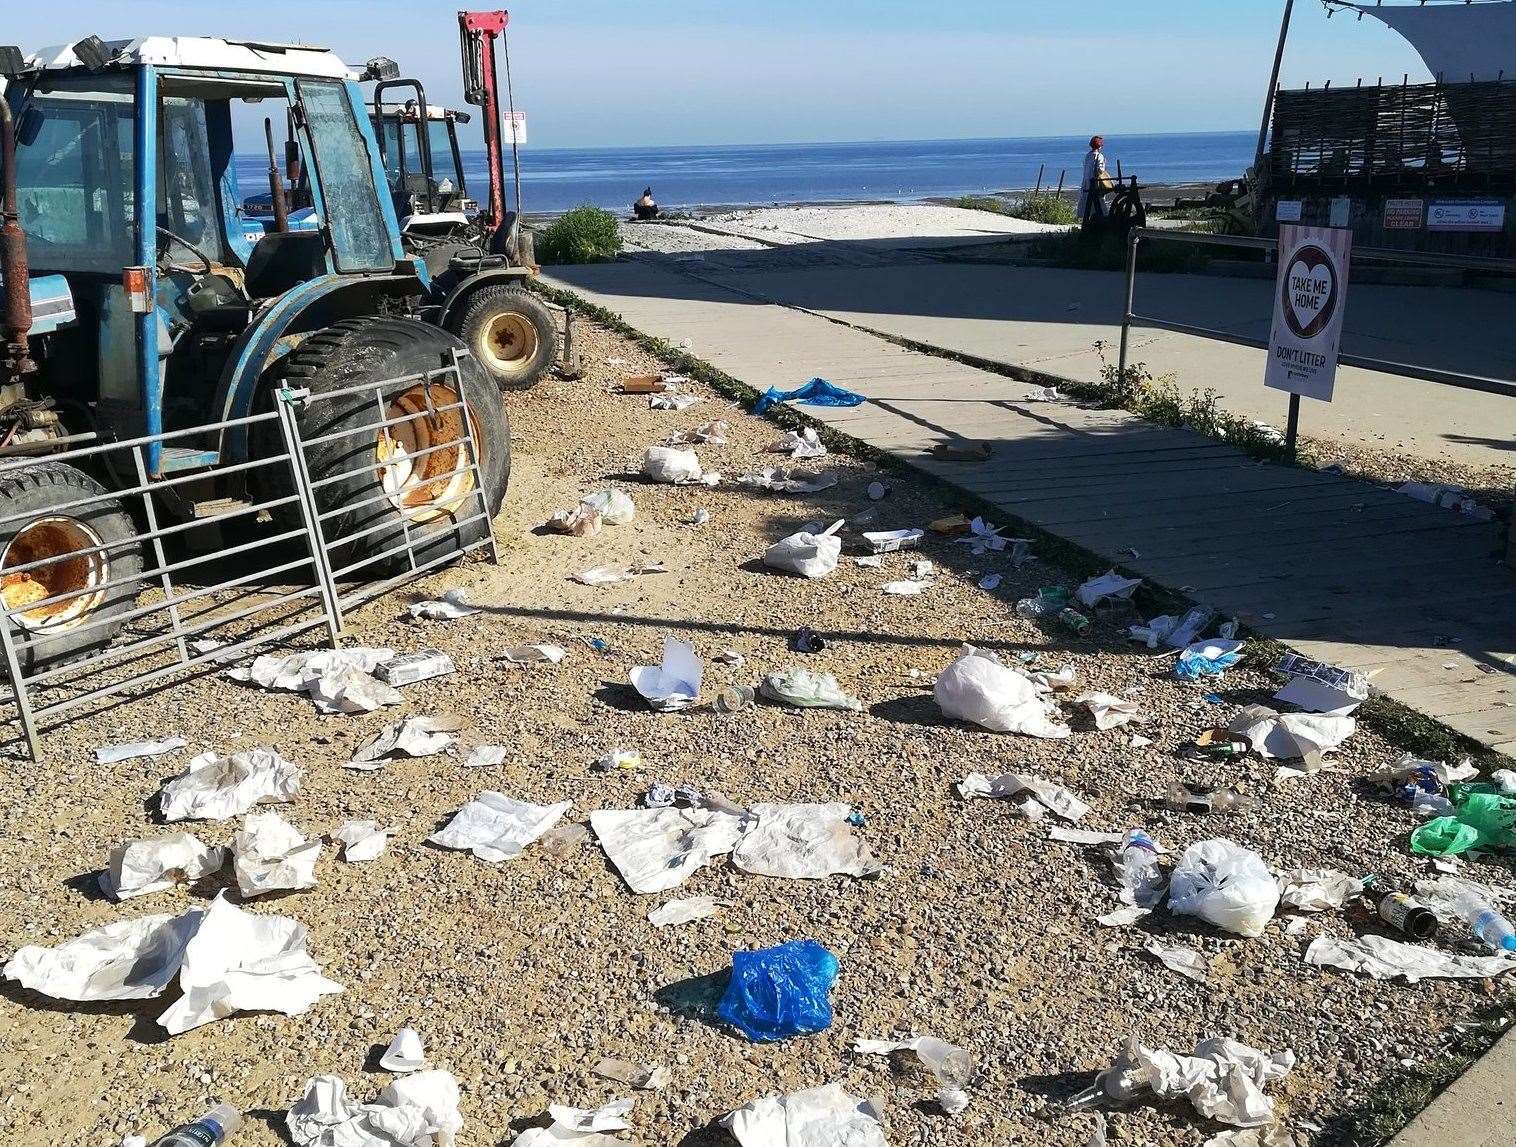 Litter strewn across Whitstable beach. Picture: Daniel Farmer